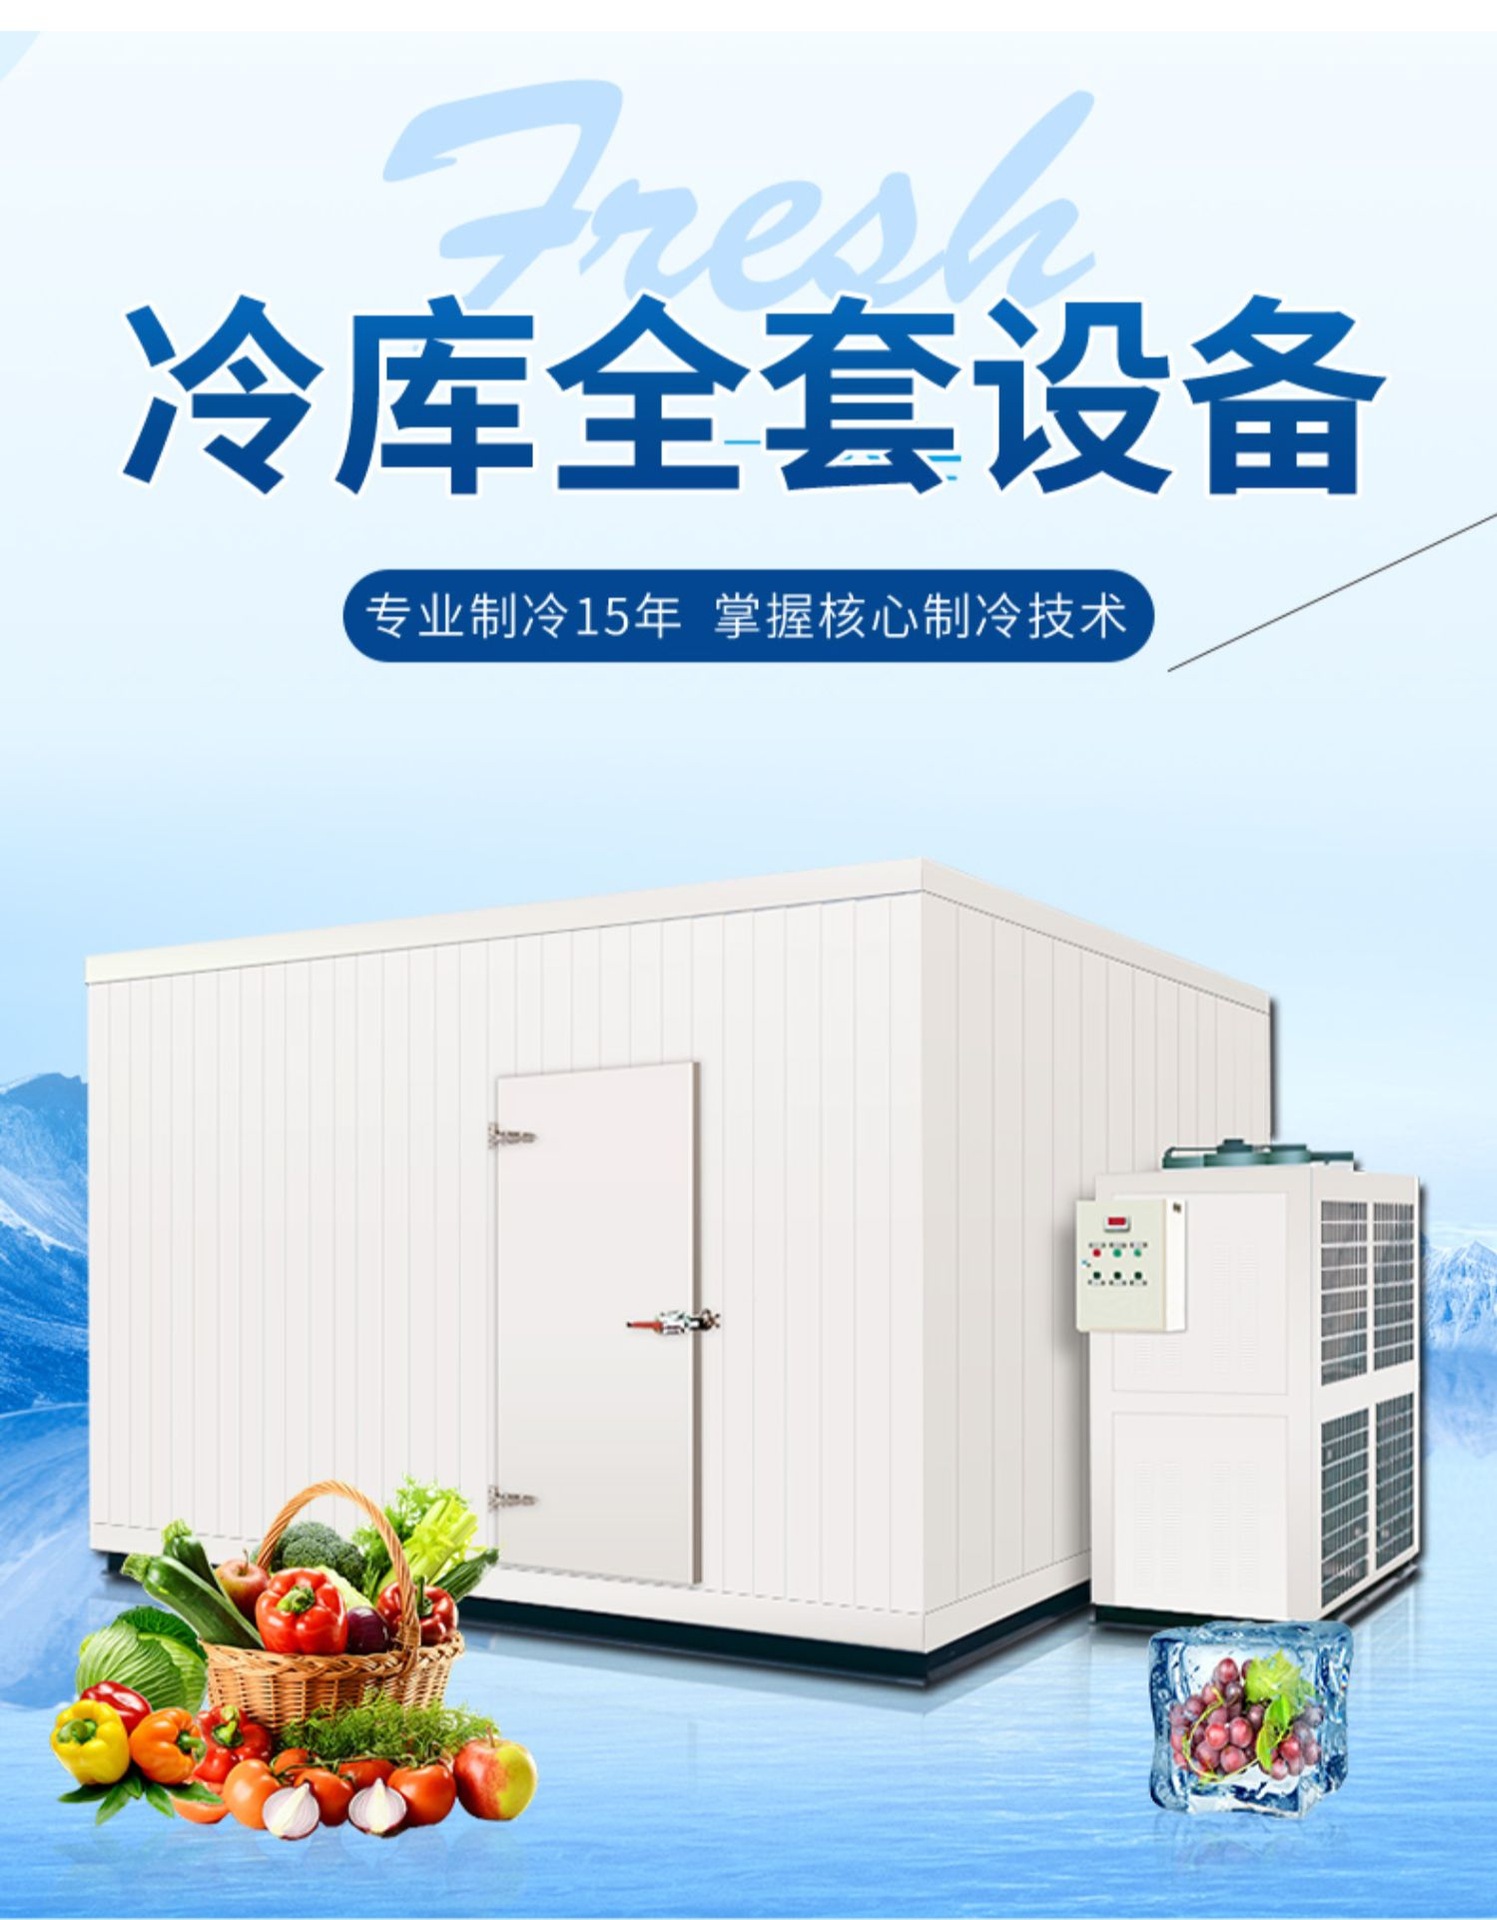 广州冷库安装厂家制冷设备销售 承接食品速冻库中央厨房冷库工程图片